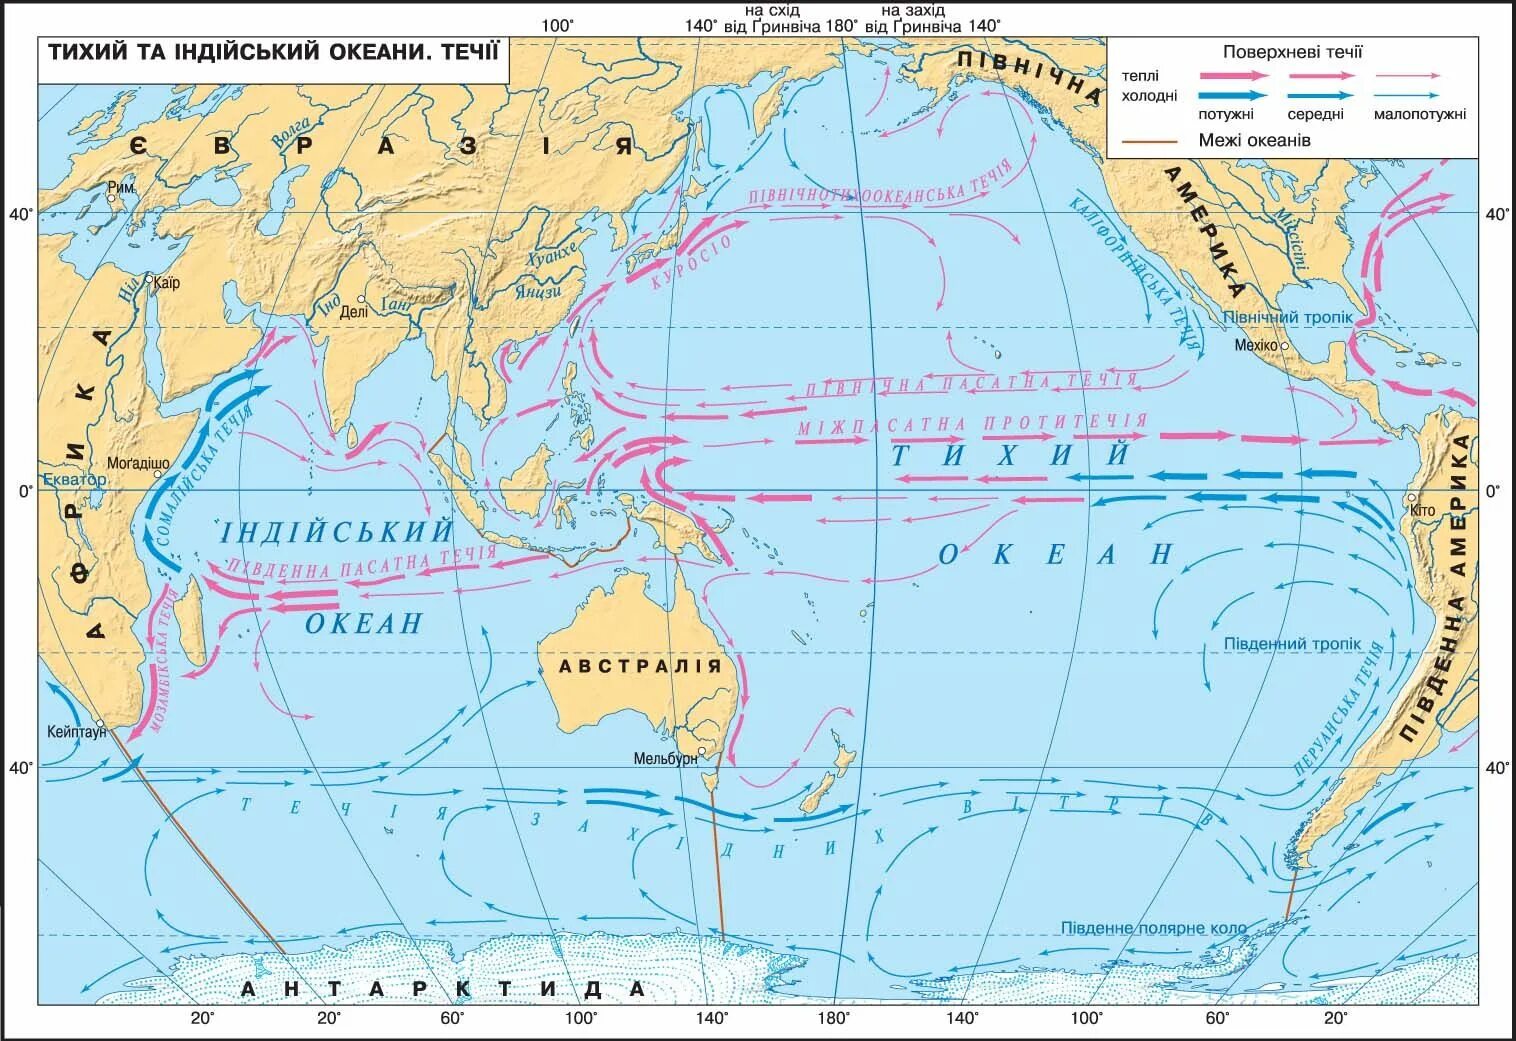 Морские течения действующие в тихом океане. Карта течений Тихого океана. Тихий океан карта 7 класс атлас холодные и теплые течения. Течения Тихого океана 7 класс. Течения Тихого океана теплые и холодные на карте 7.